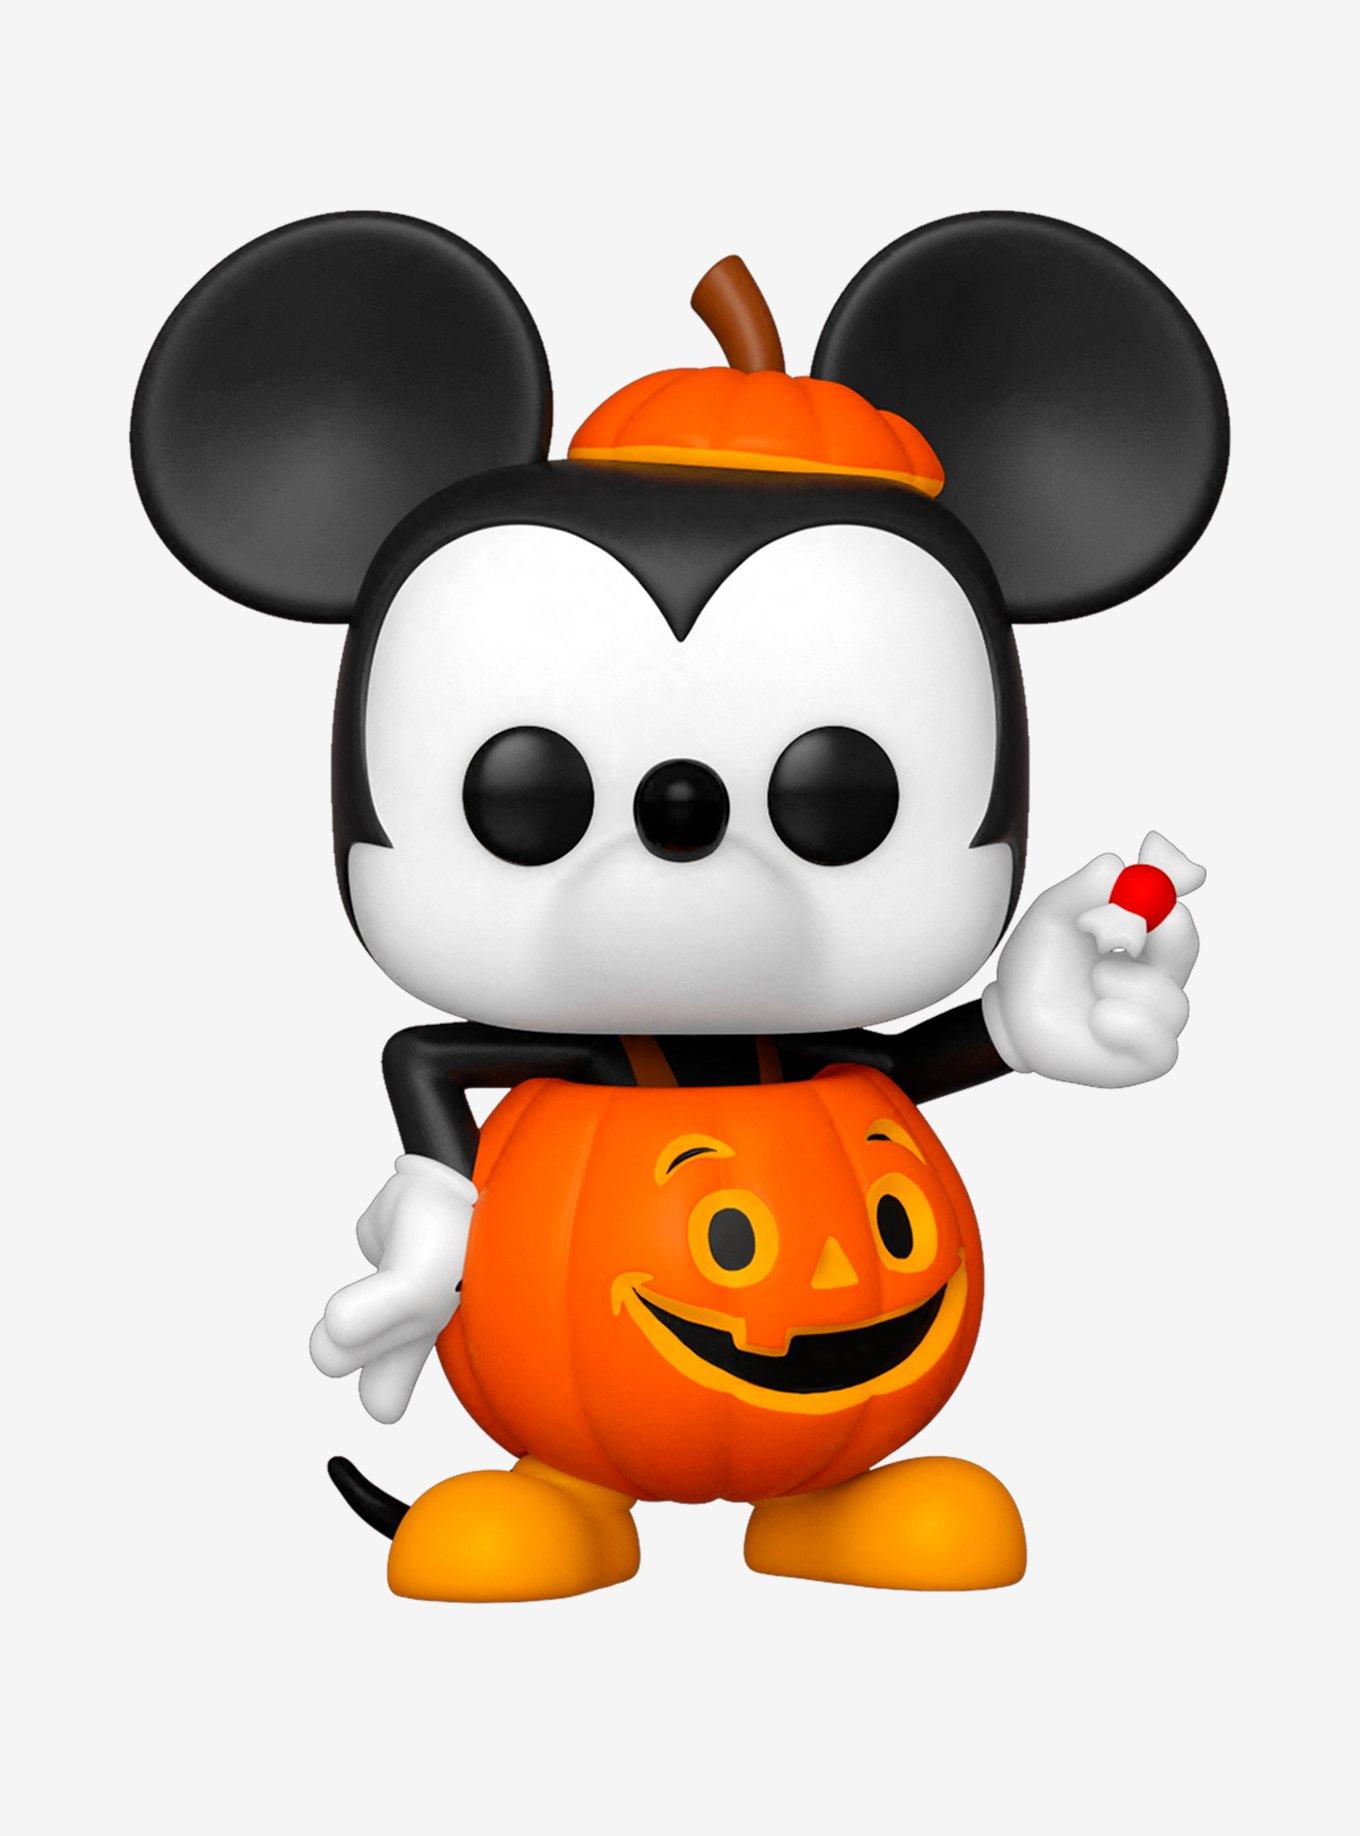 Disney Mickey Halloween Treats Mug - Jolly Family Gifts